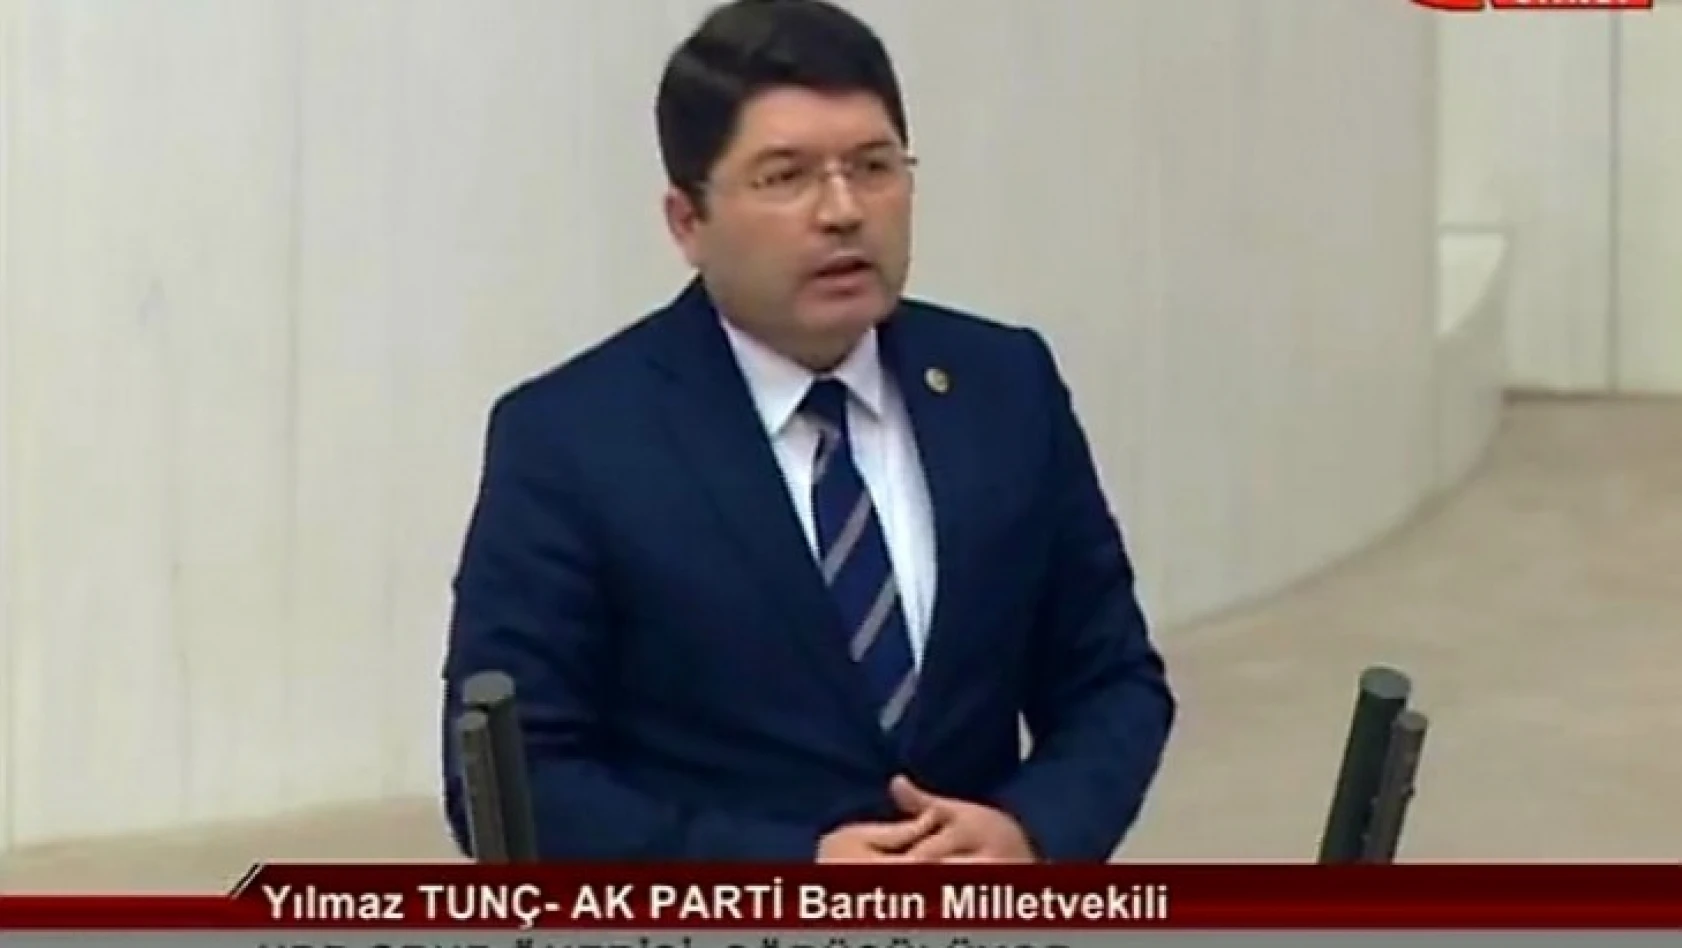 Tunç, Mecliste HDP grup önerisi hakkında konuştu